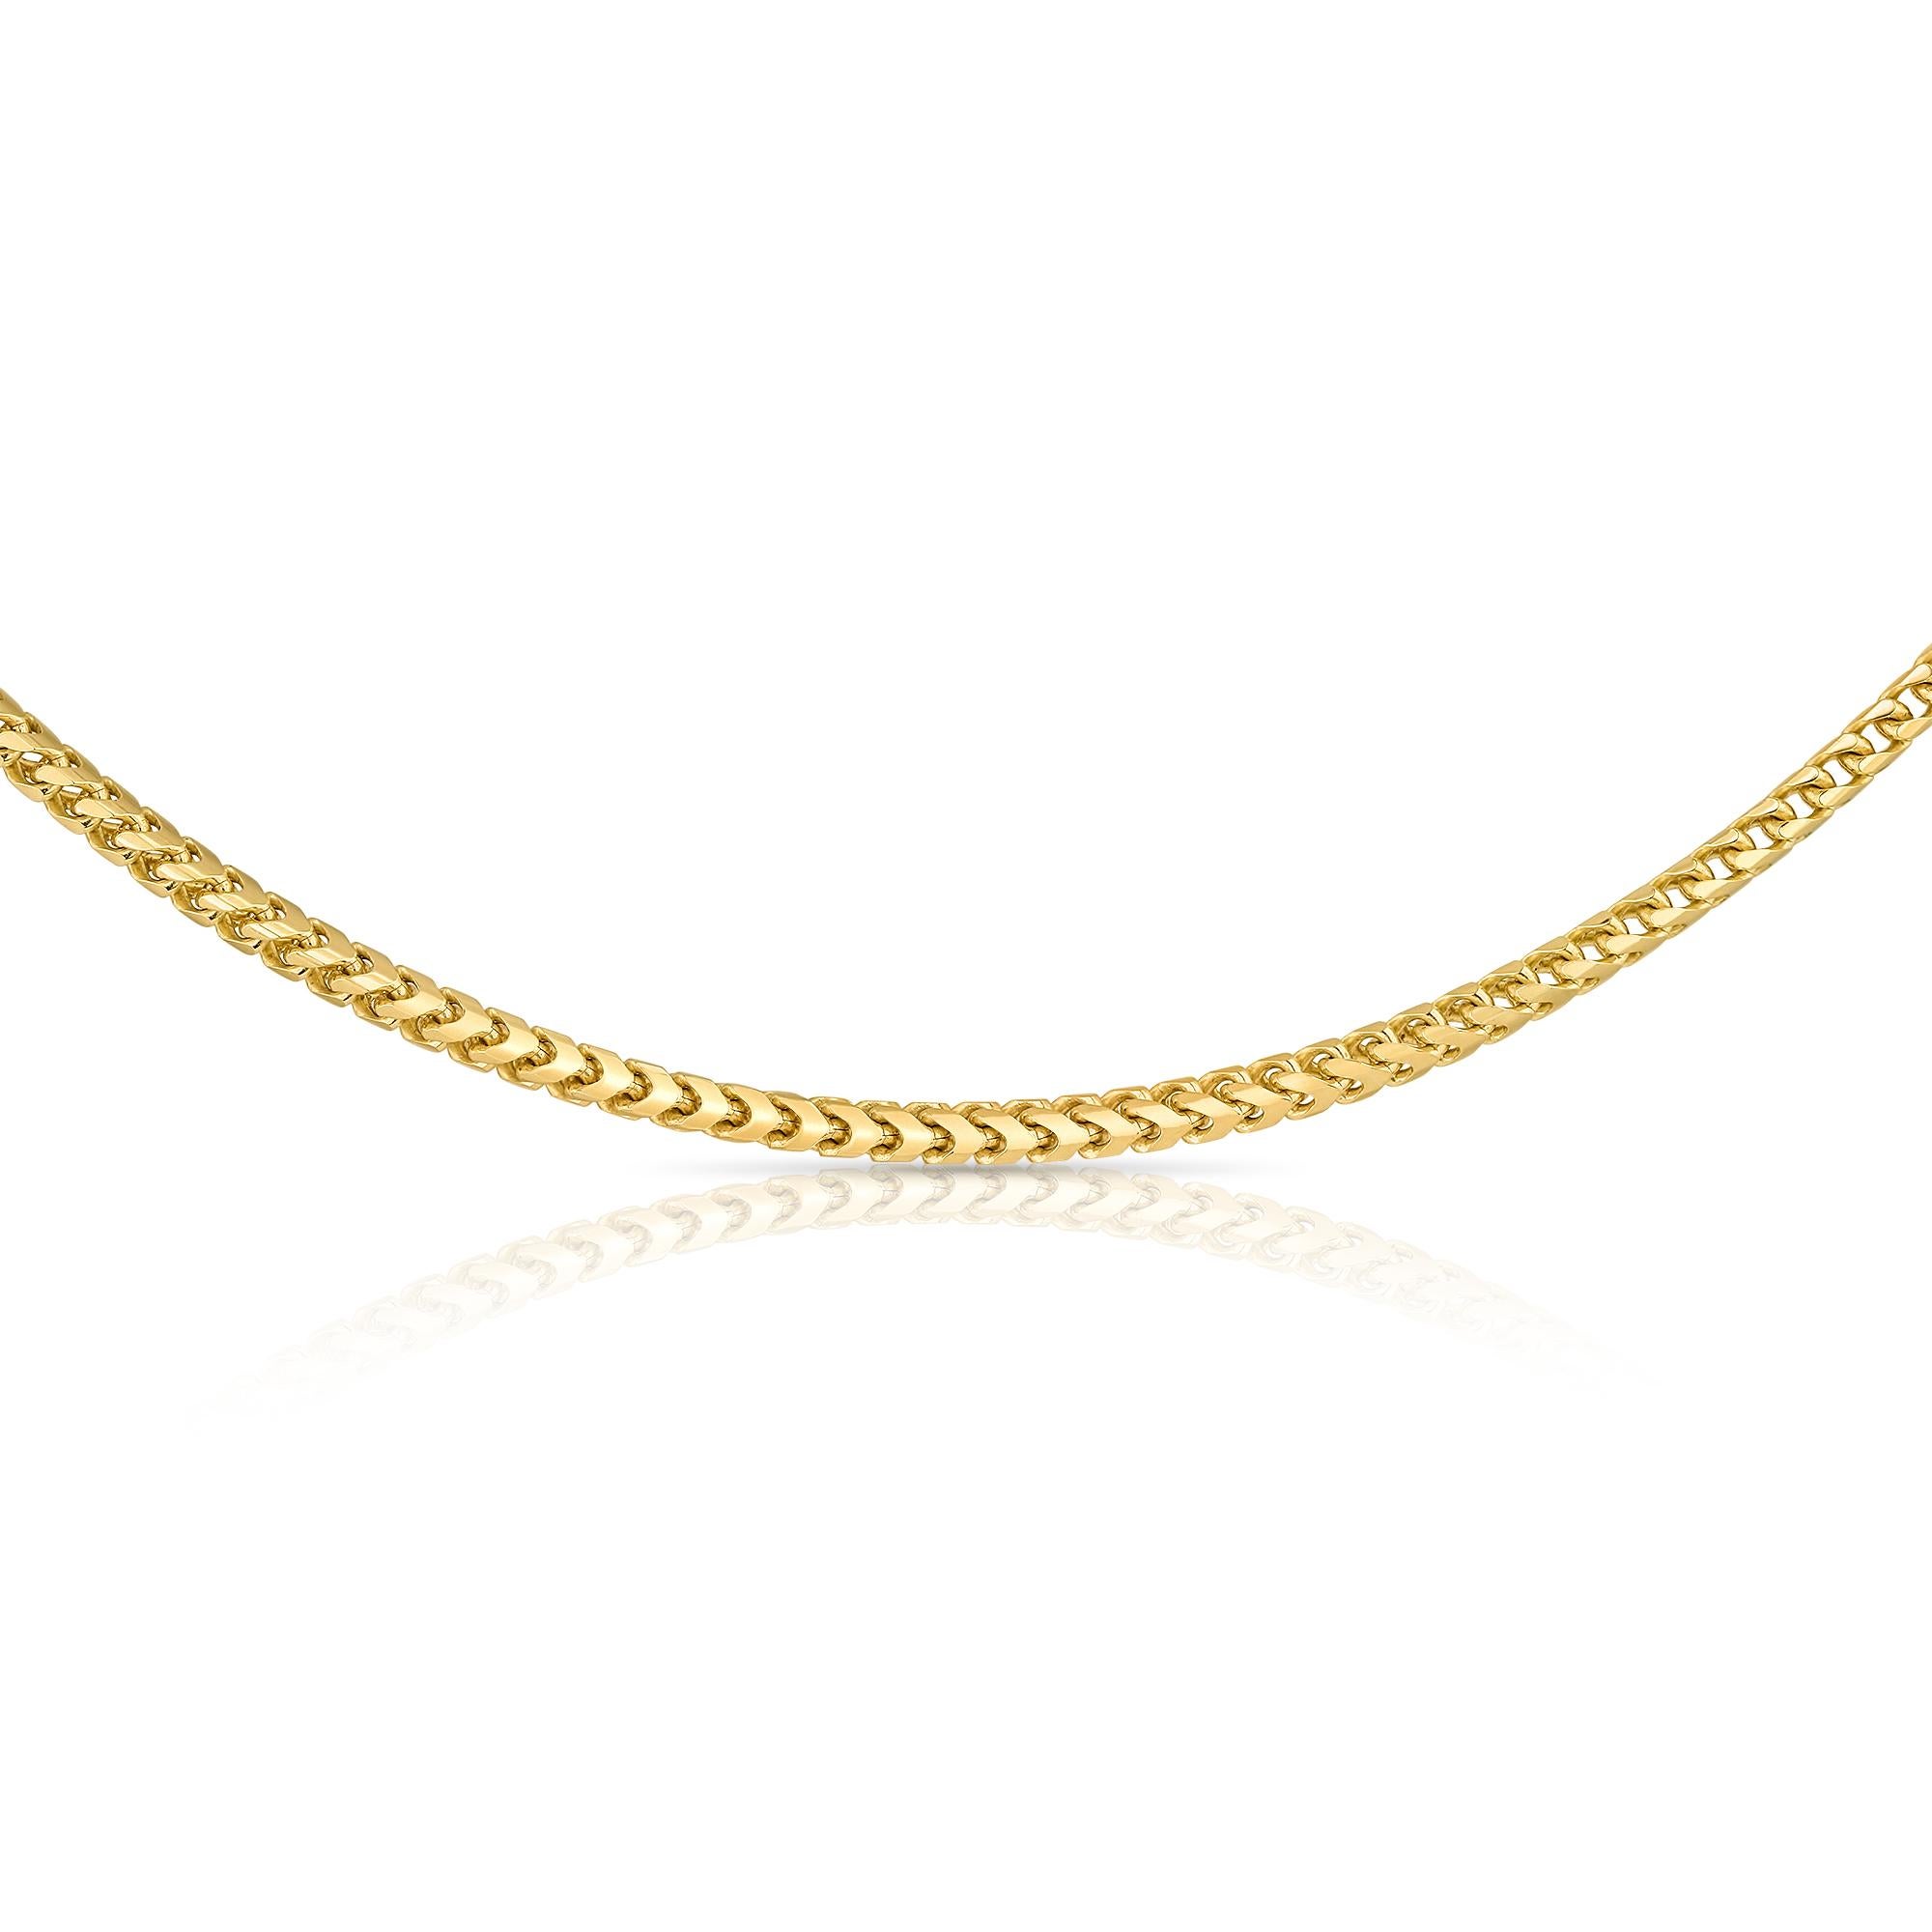 14 Karat Gelbgold Dickes Minimalistisches Rombo Kette Halskette 50cm -  Shlomit Rogel

Eine dicke Rombo-Kette aus massivem 14-karätigem Gold mit viel Stil, Eleganz und Schönheit. Diese moderne Kette mag in ihrem Stil minimalistisch sein, aber sie